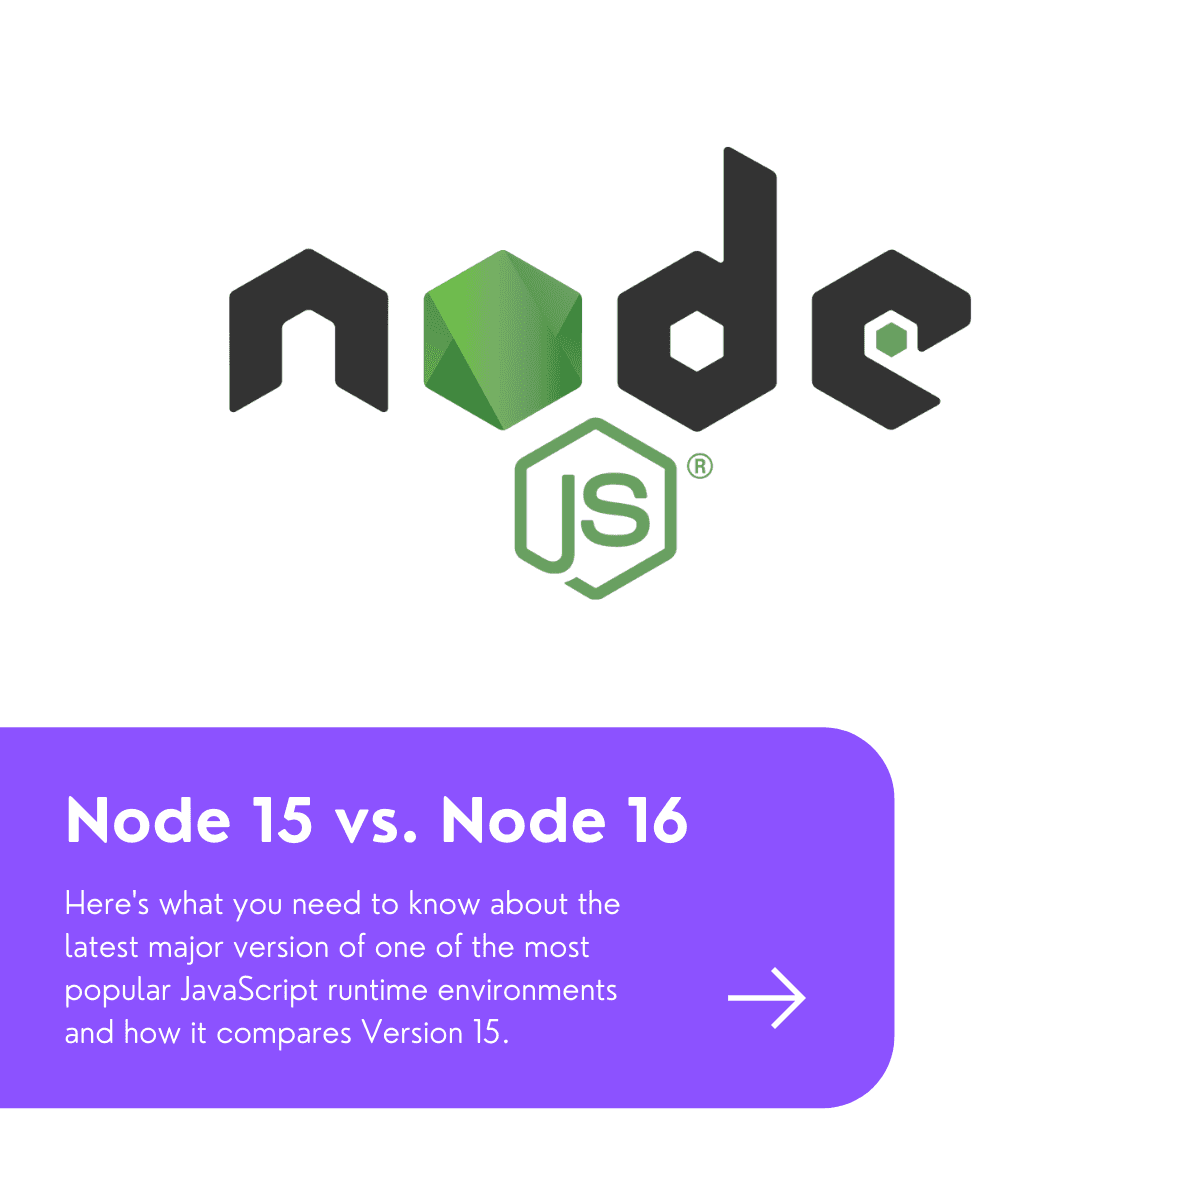 node 15 vs node 16 graphic